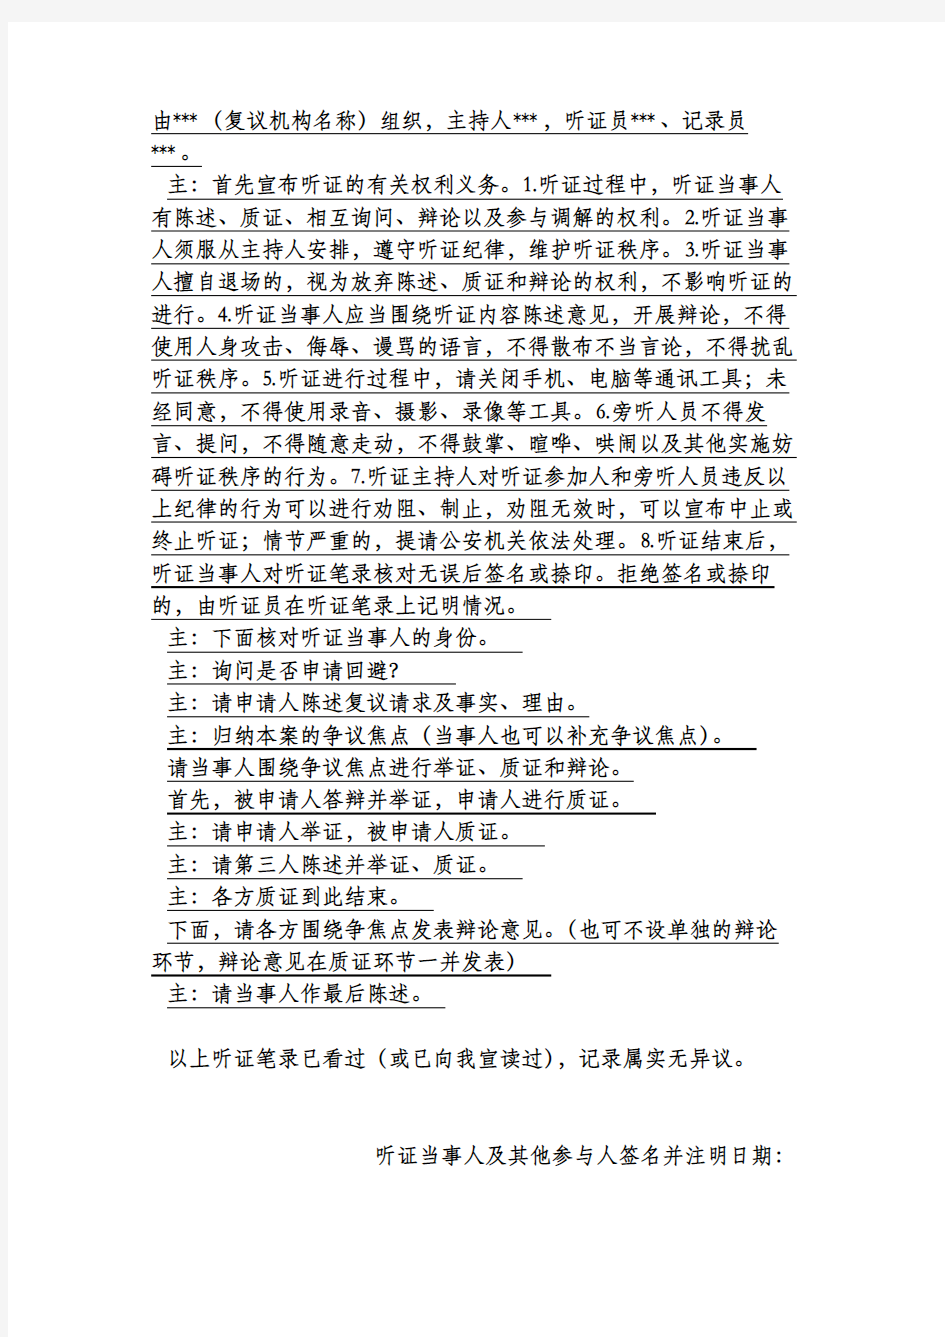 杭州市人民政府法制办公室行政复议格式文书(行政复议听证笔录)